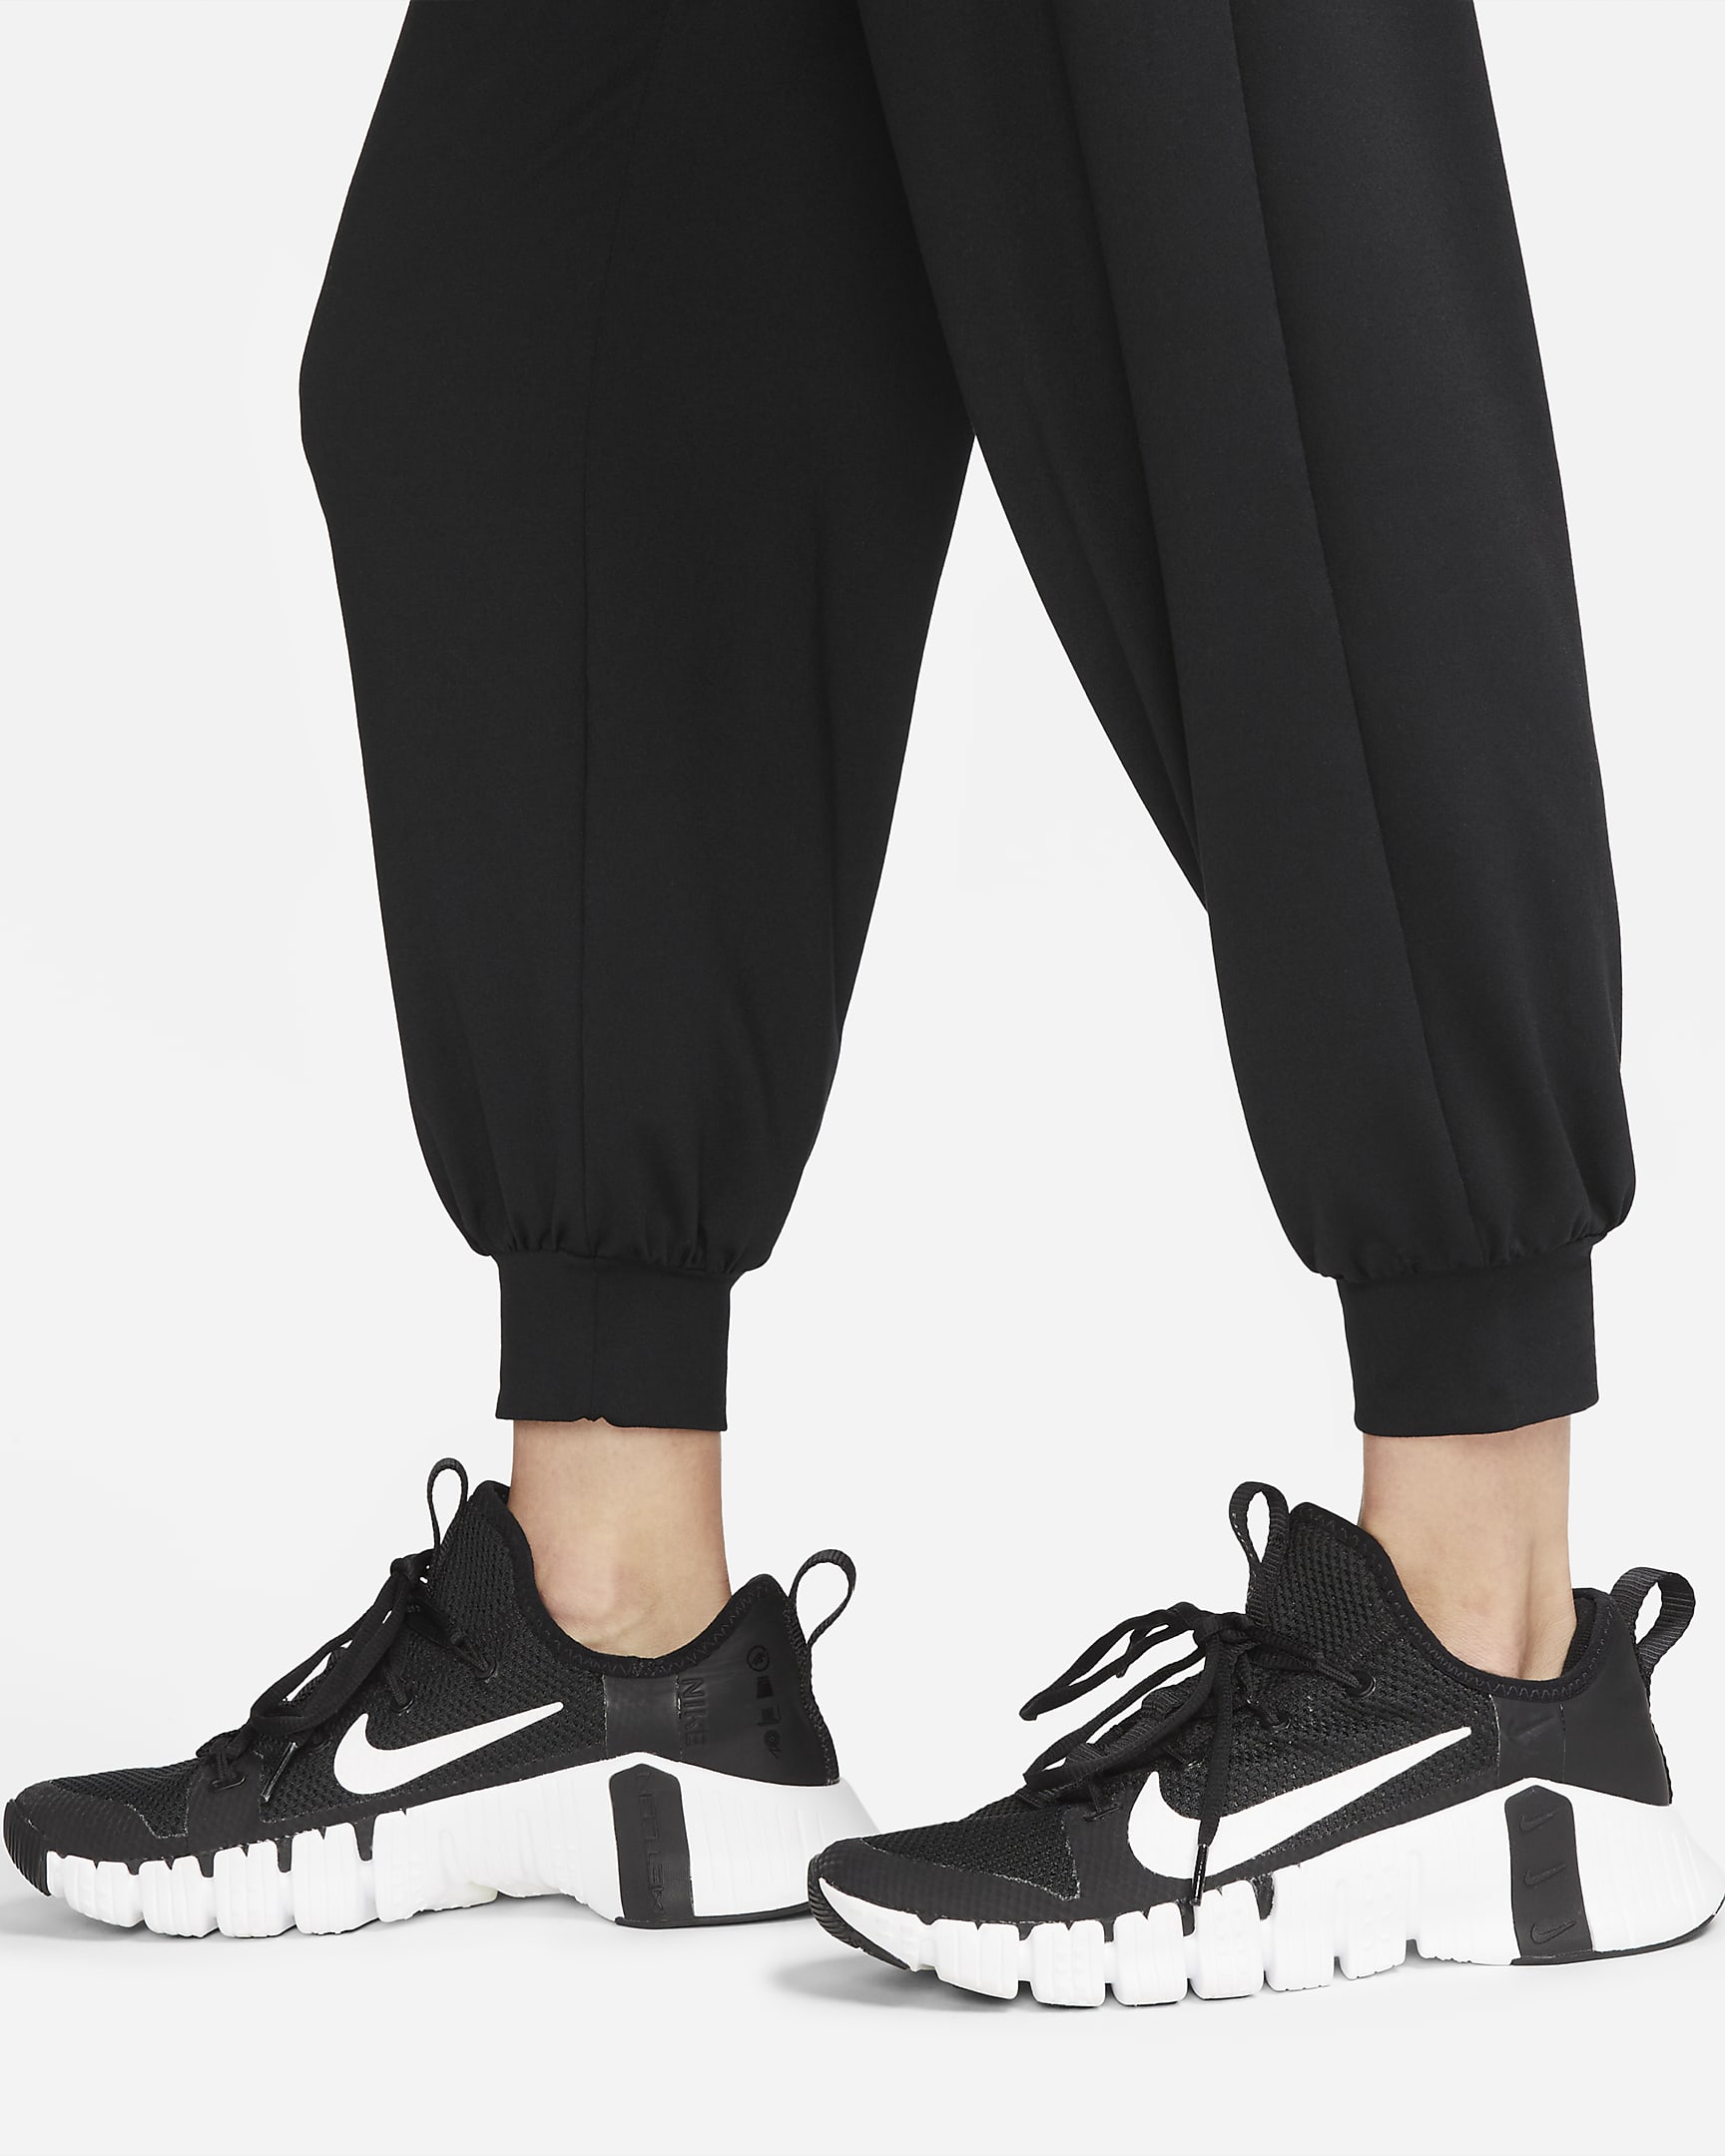 Nike Dri-FIT Women's Mid-Rise 7/8 Knit Joggers. Nike JP